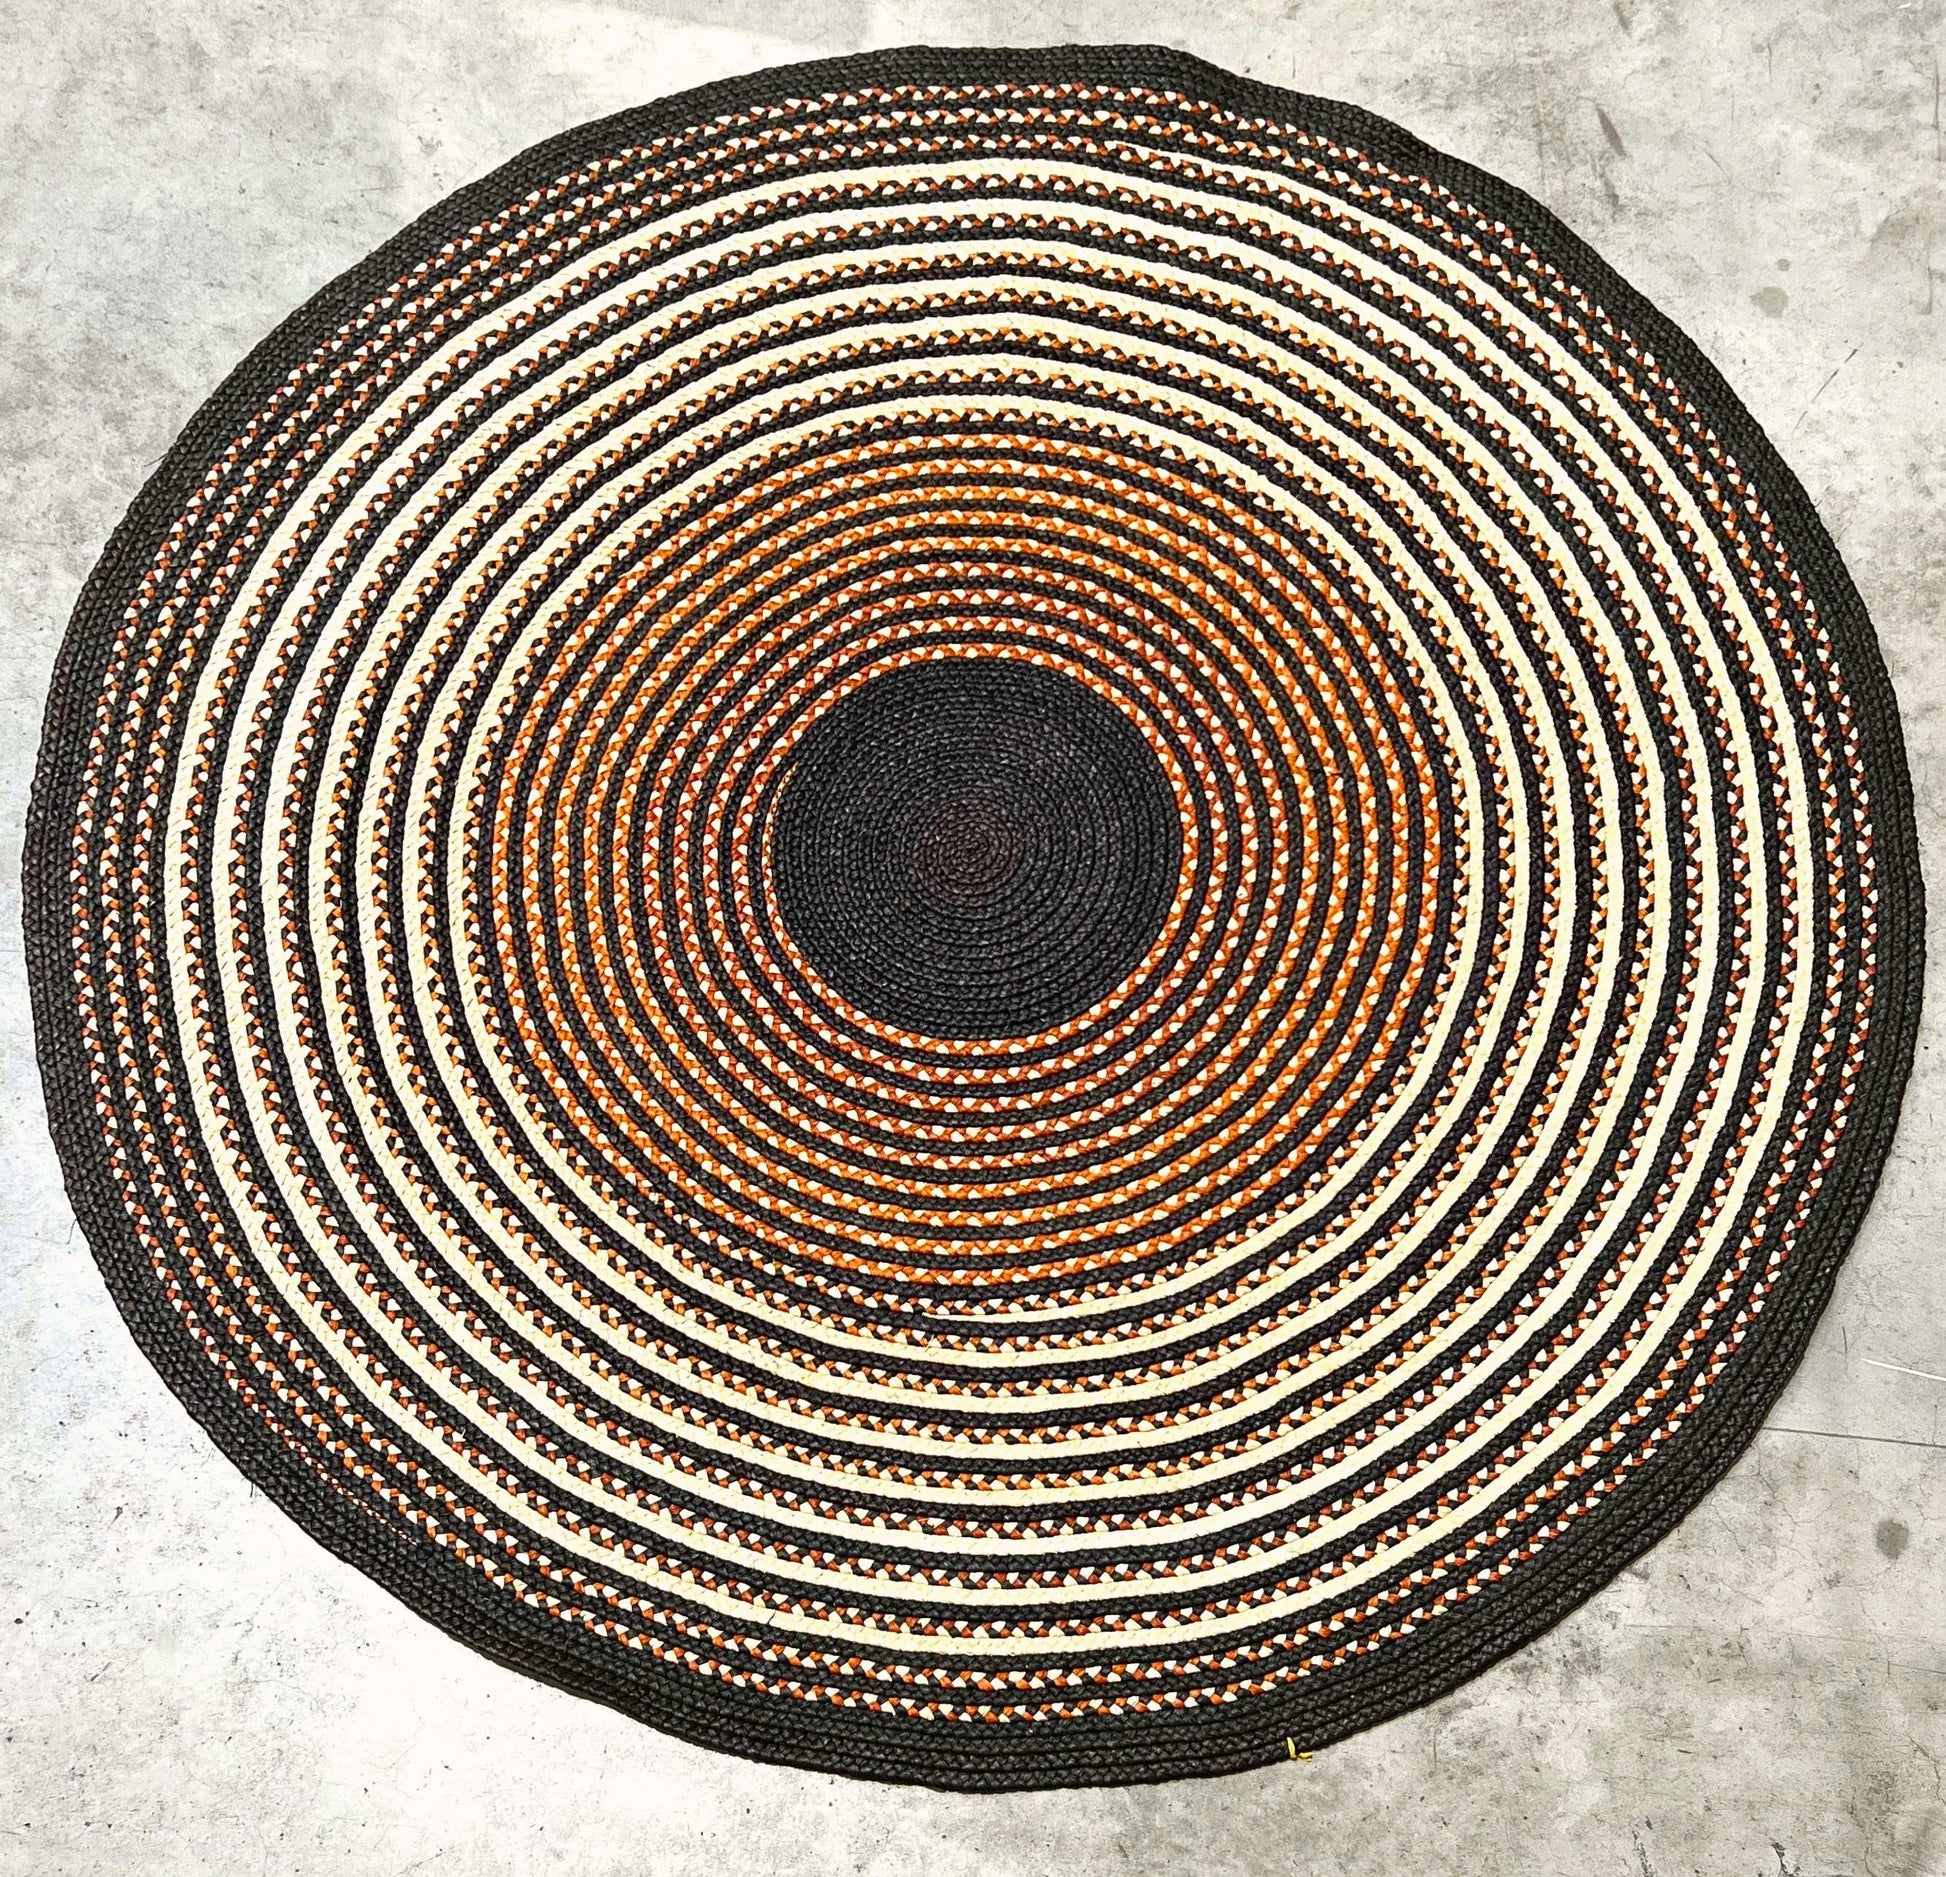 Tapis rond en raphia naturel, ocre et noir- Laurette - 220 cm Intimani Ethnique chic